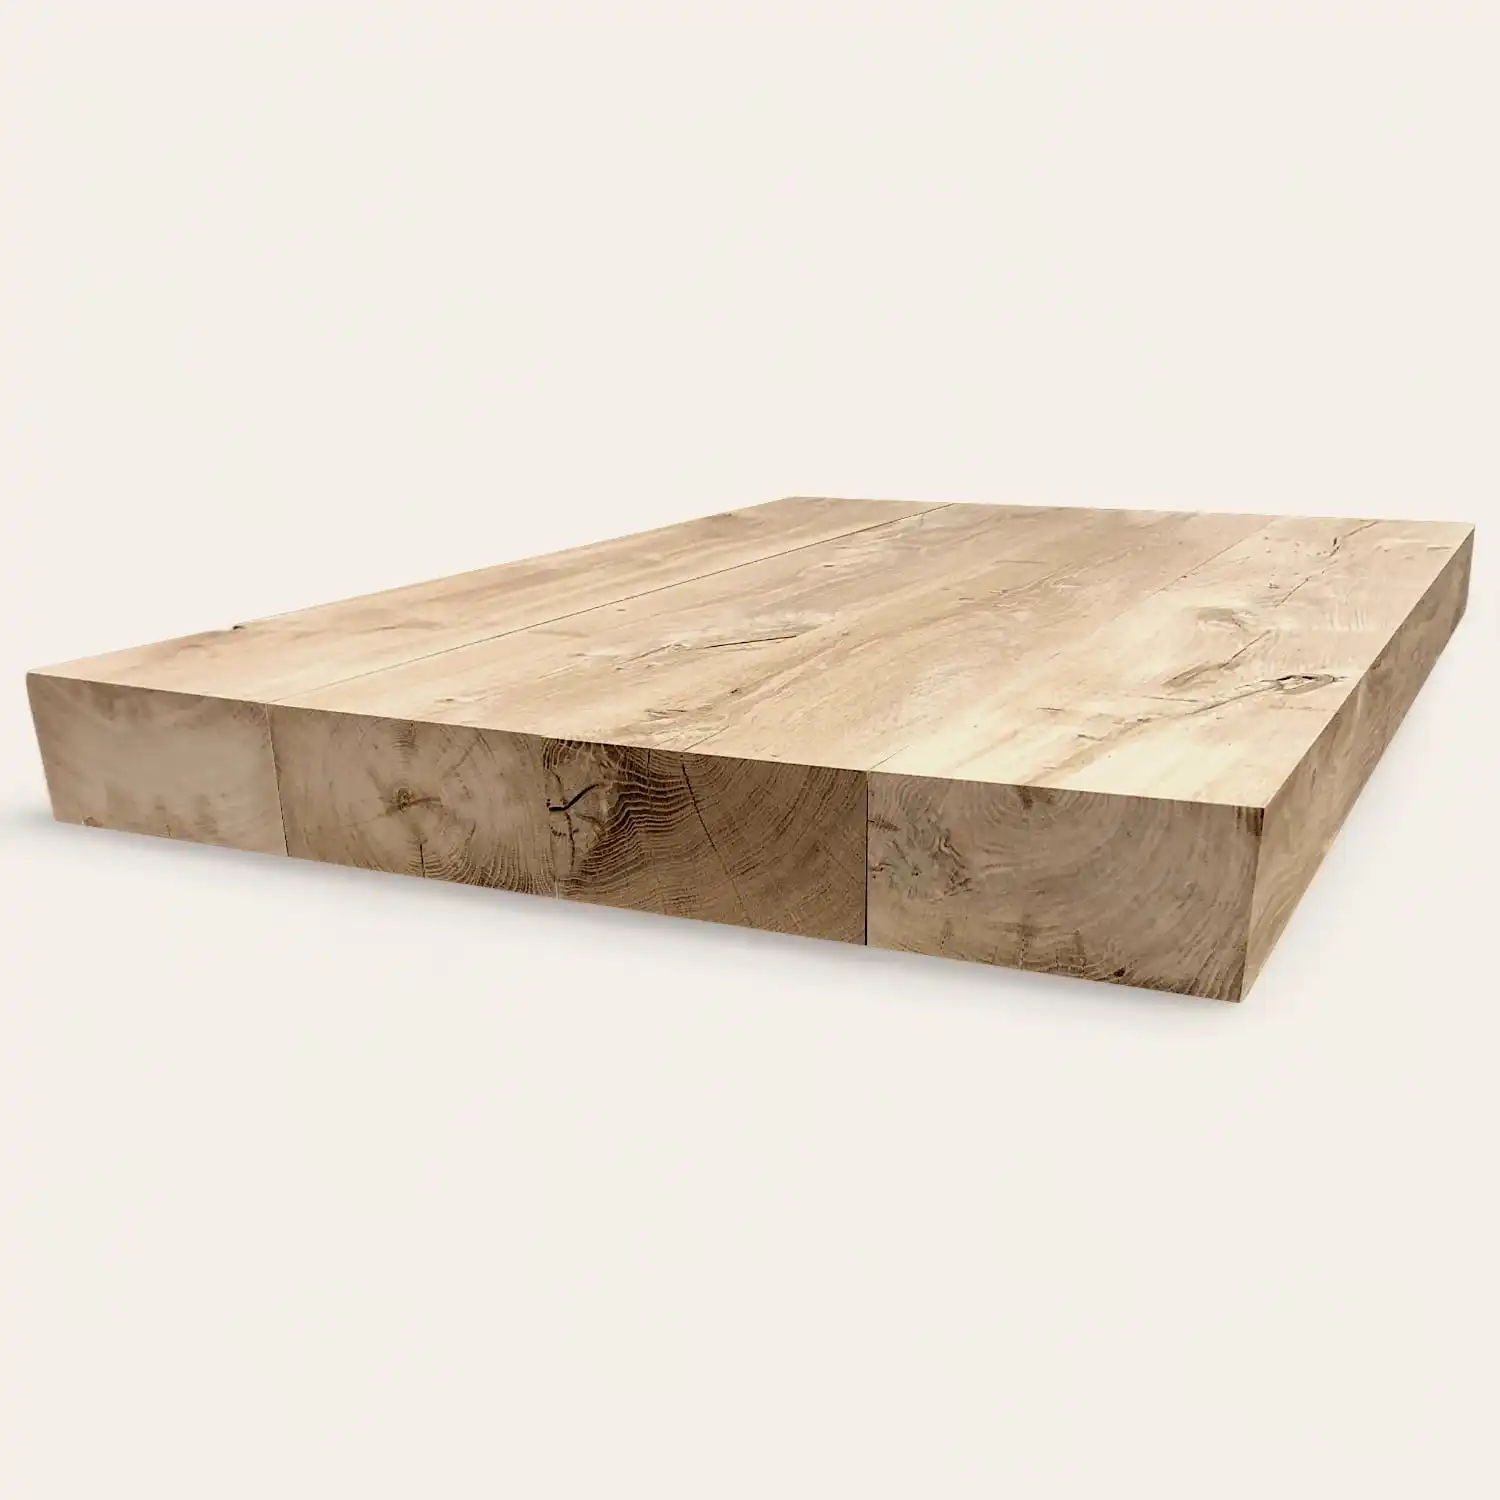  Une planche à découper en bois sur fond blanc. 